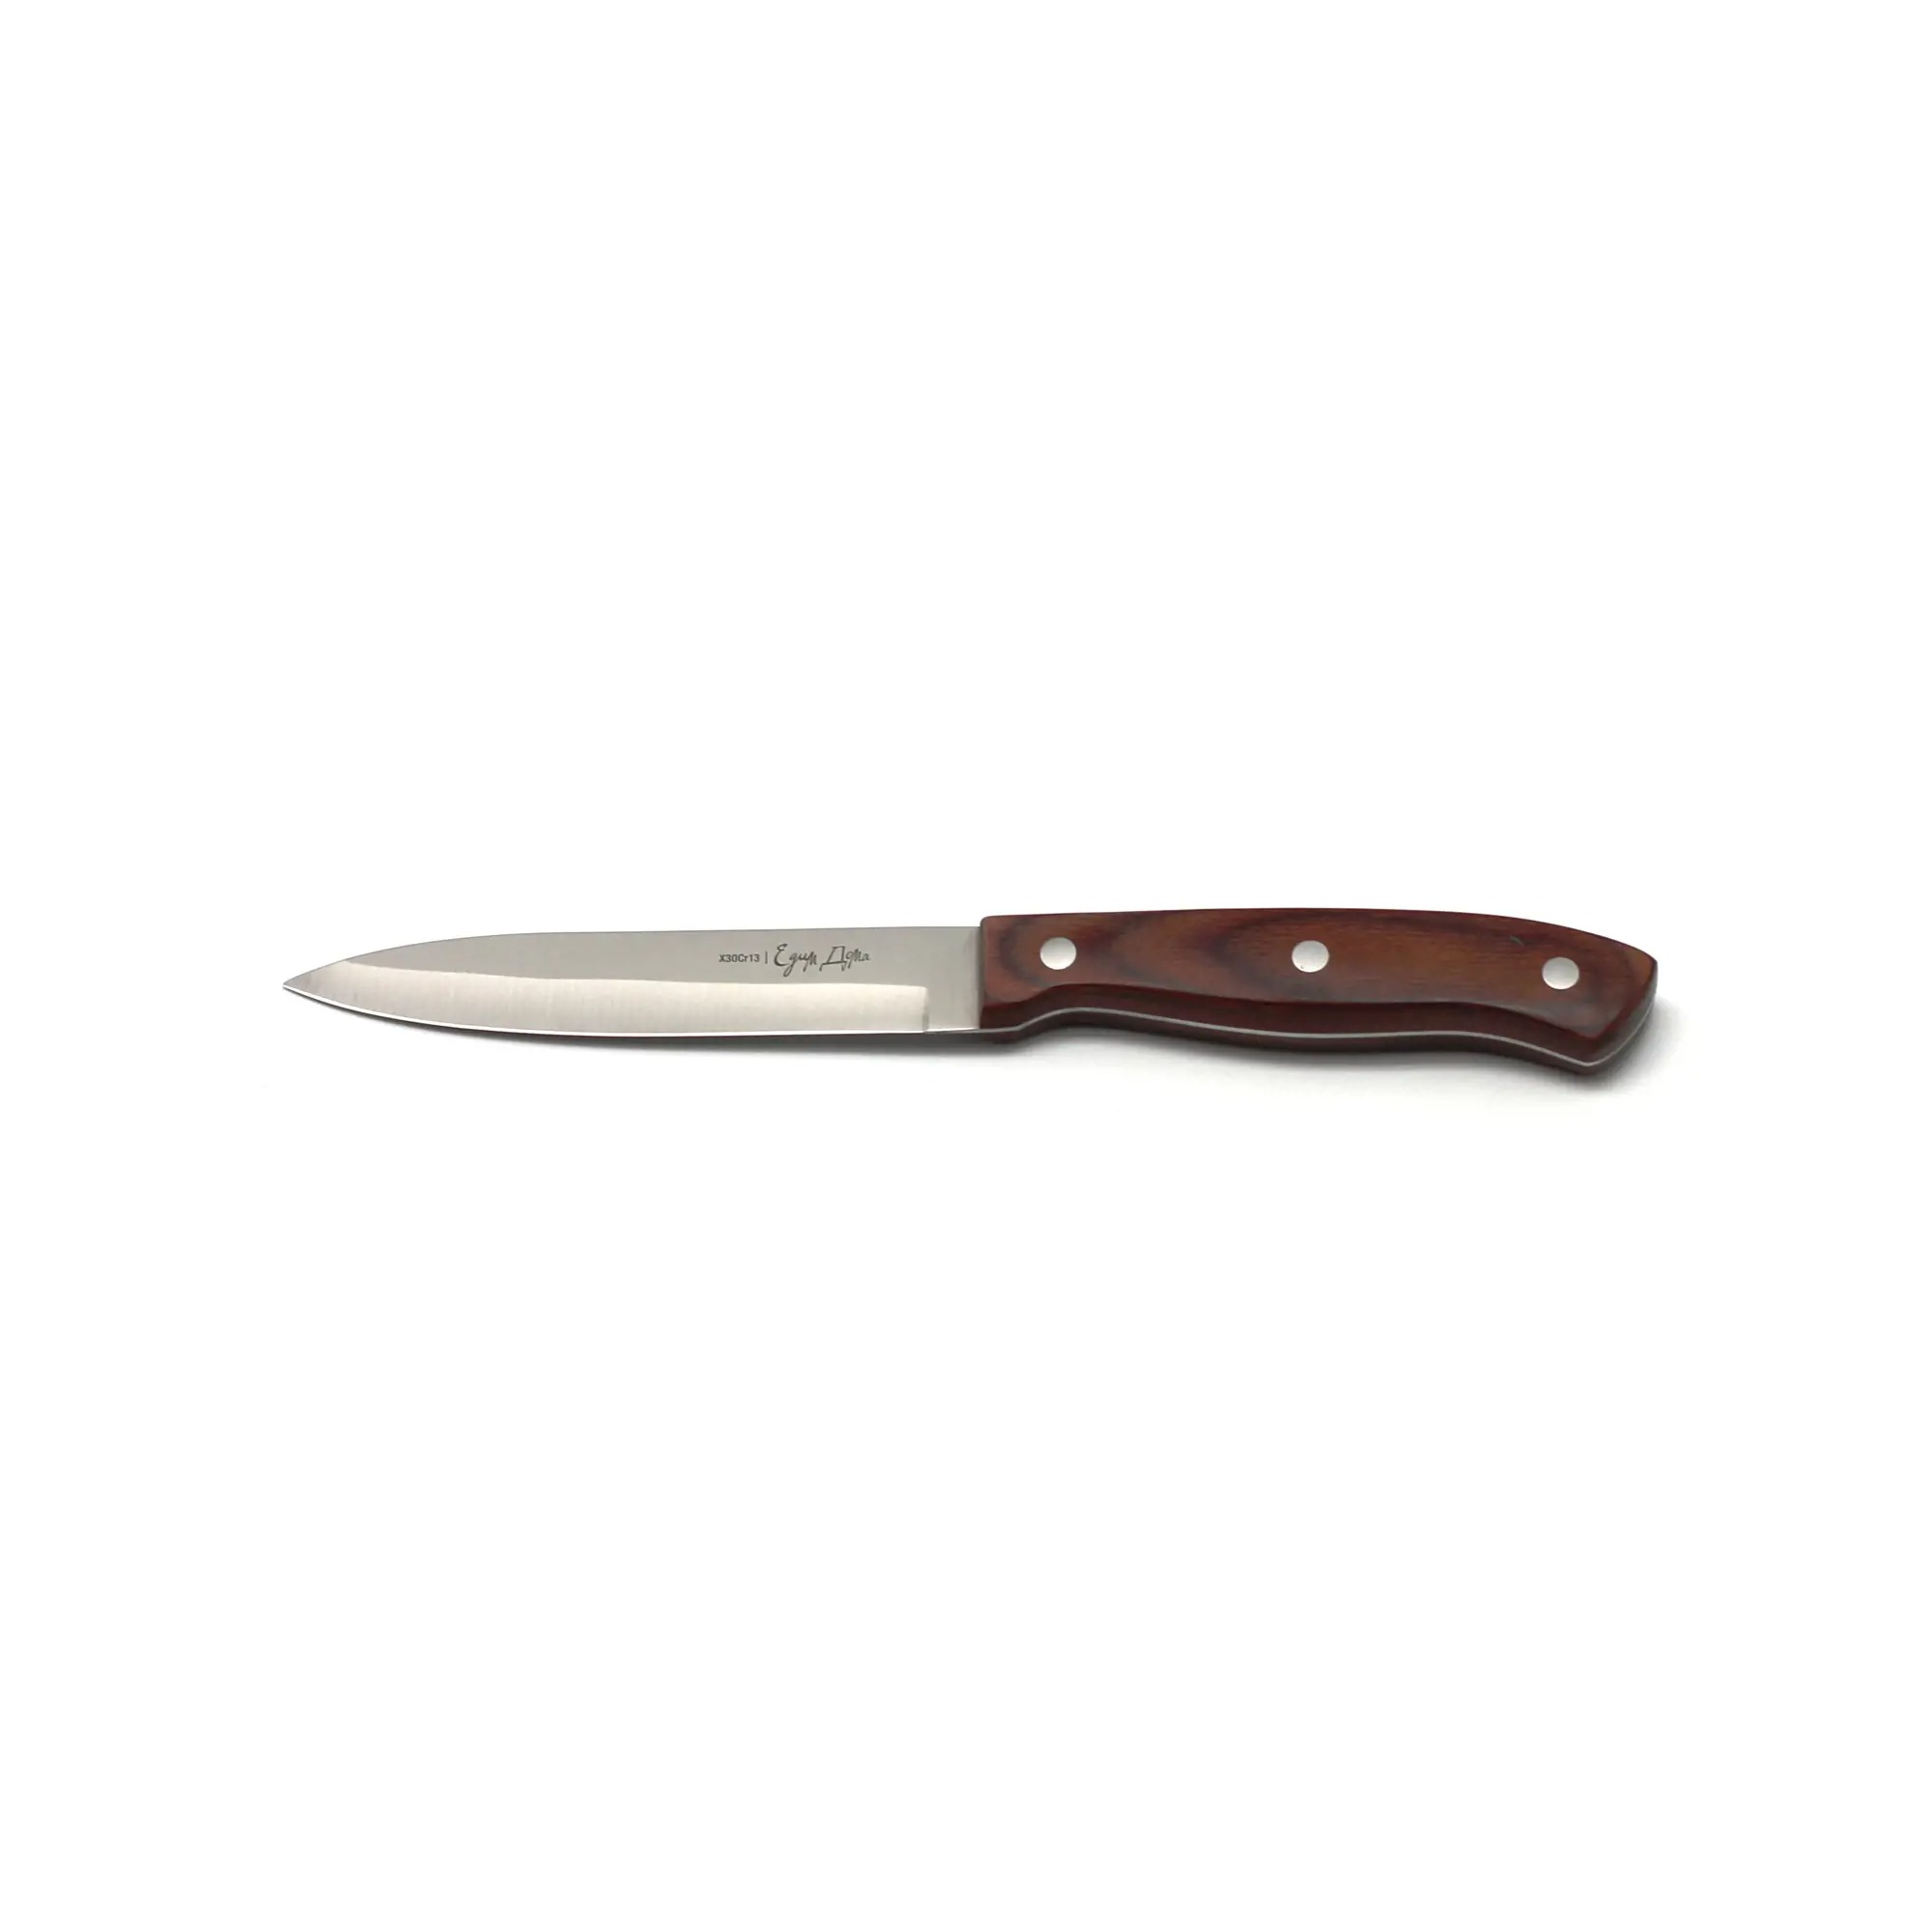 Нож универсальный Едим дома кухонный 12см листовой (ED-408) нож универсальный едим дома кухонный 12см листовой ed 408